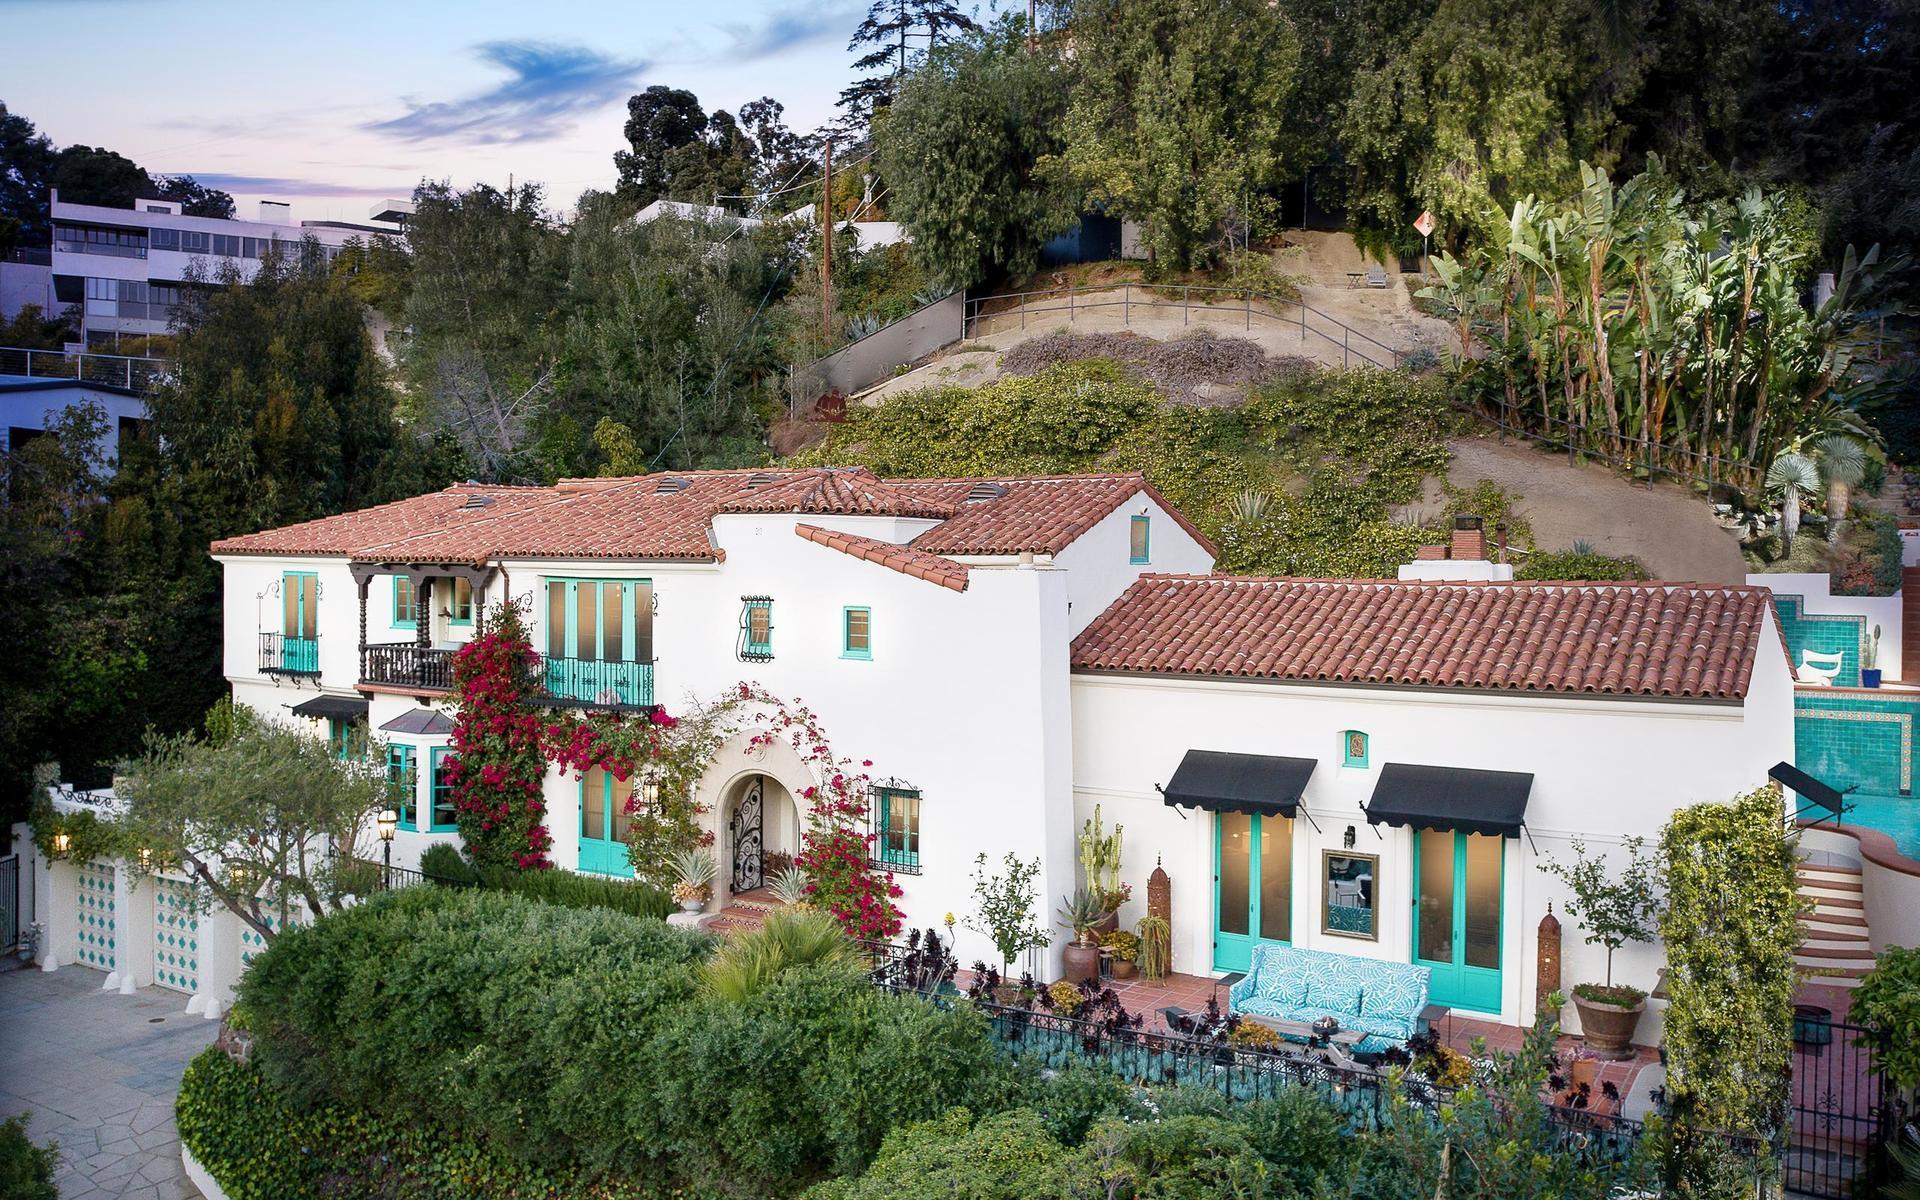 Huset i Los Feliz uppskattas av stjärnorna. I slutet av 90-talet bodde artisten Gwen Stefani där. 2013 flyttade Jesse Tyler Ferguson från tv-serien Modern Family in, och nu är det dags för DiCaprios mamma.